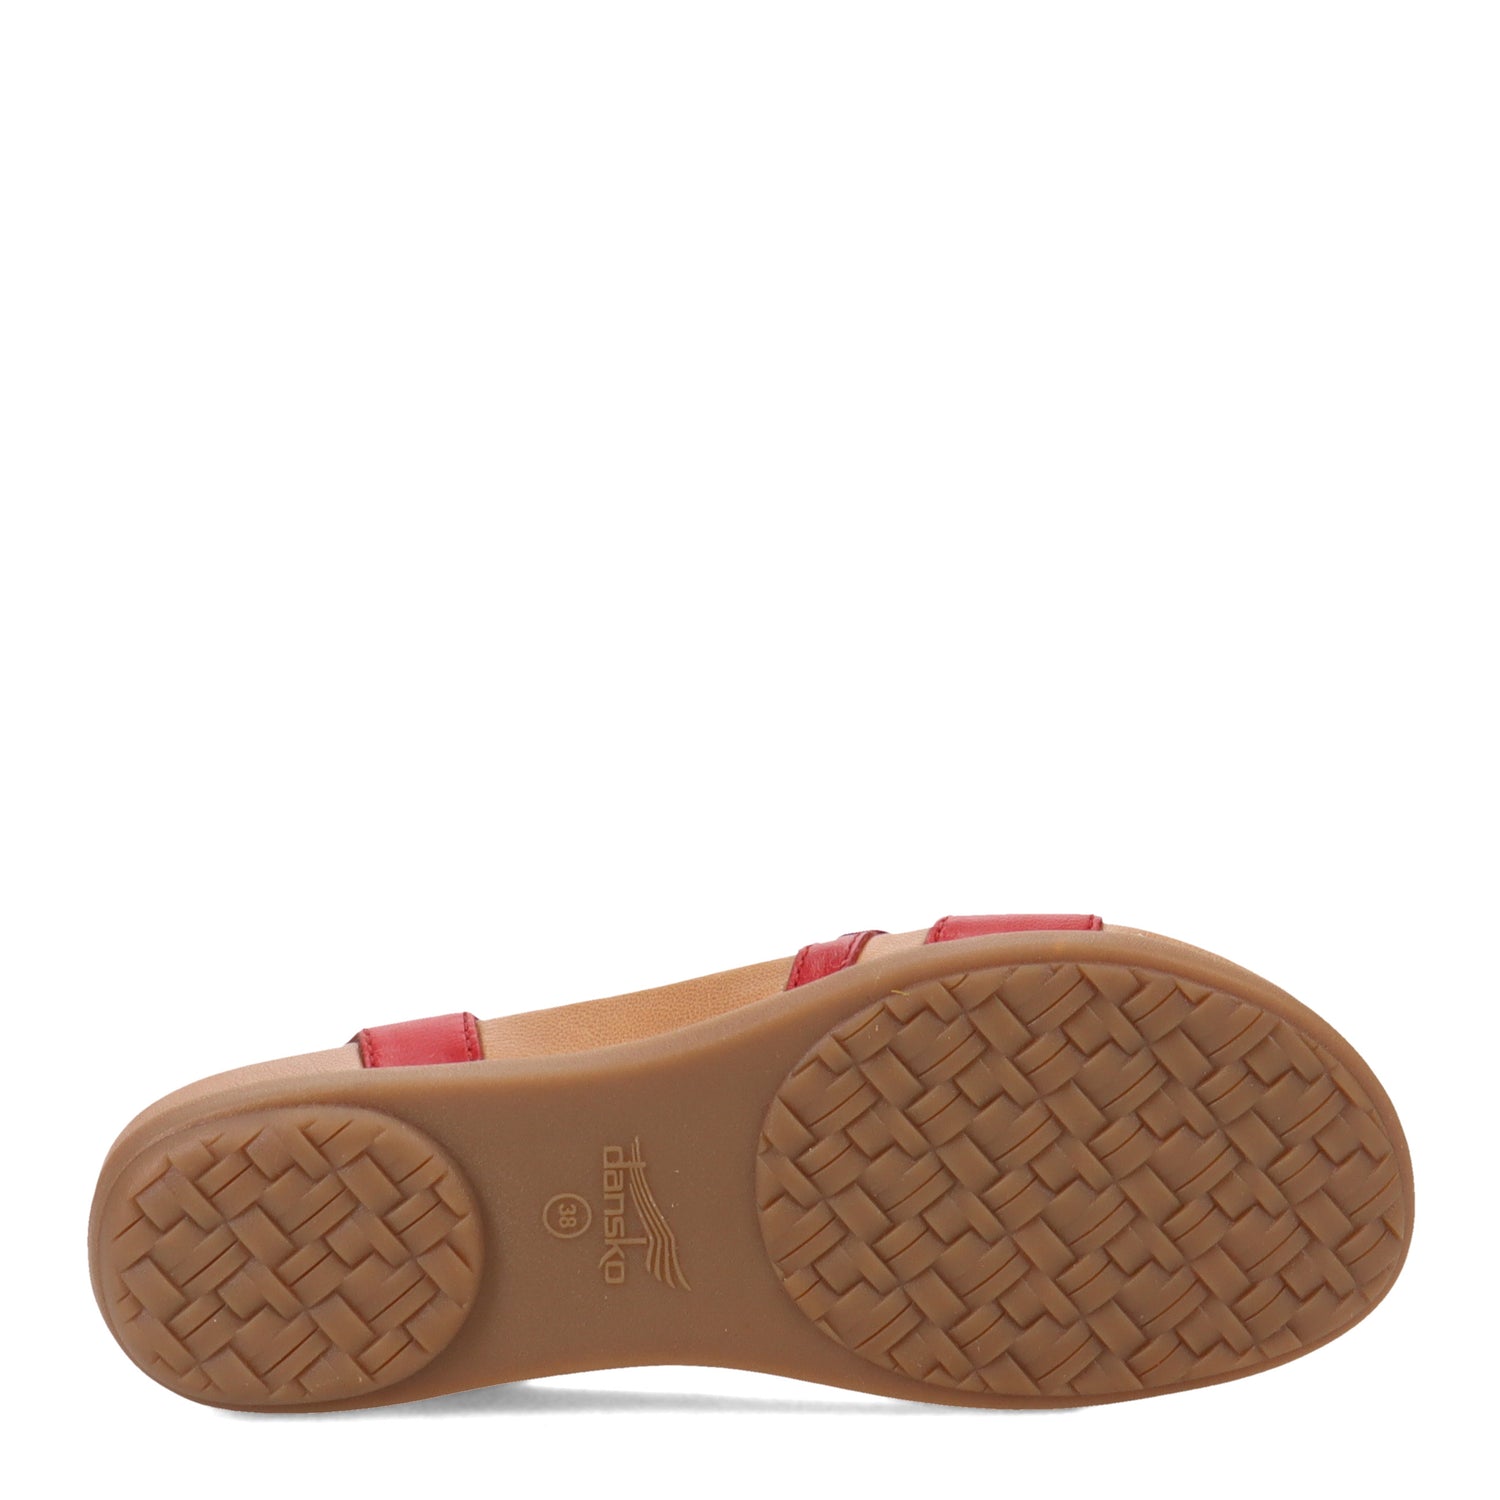 Peltz Shoes  Women's Dansko Janelle Sandal Red 6210-040300